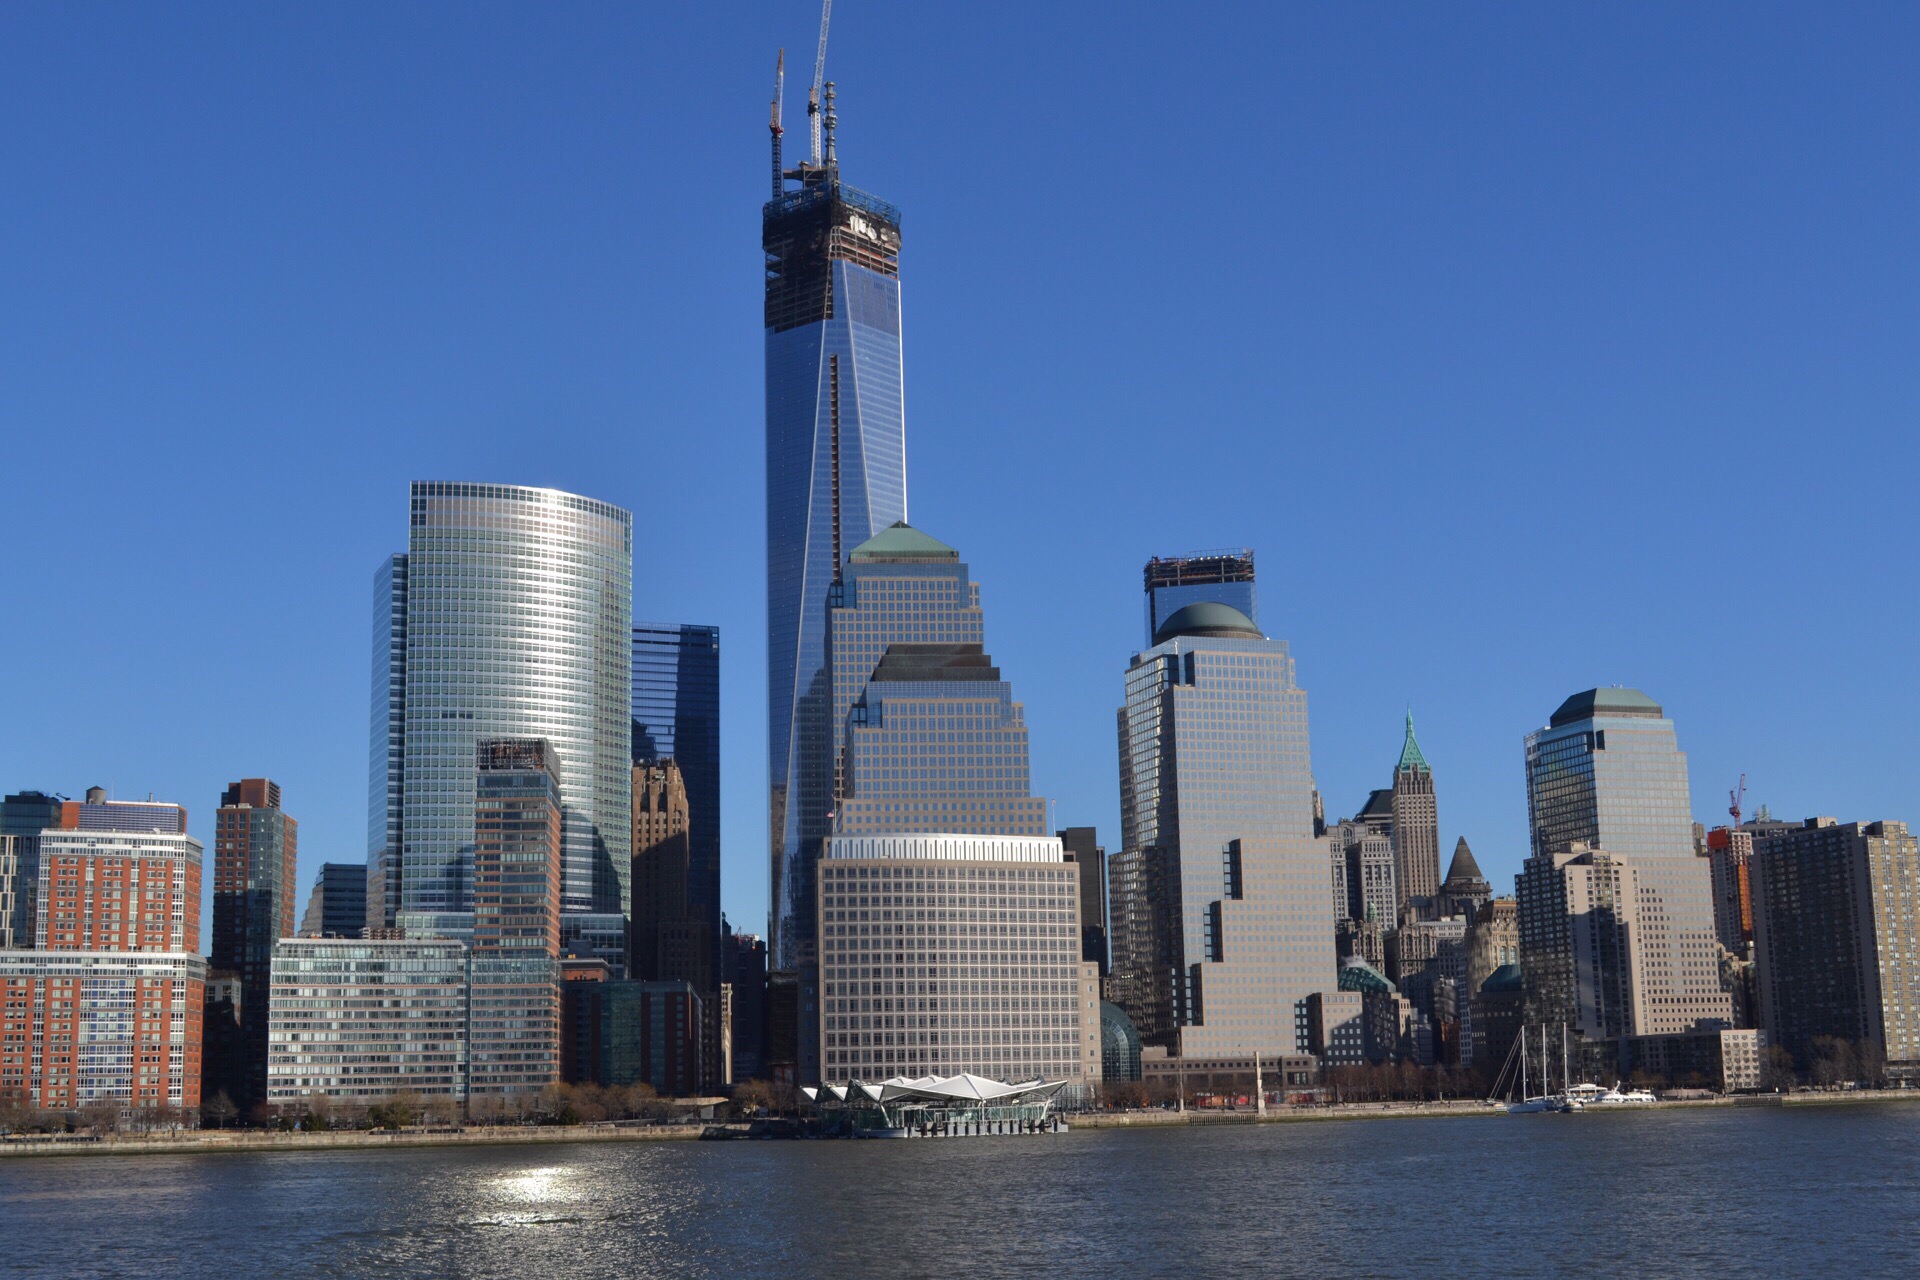 从水上看曼哈顿大楼林立，一片繁华都市气派，的确让人感受到了大都市的繁华，不知道大家的感受是什么？